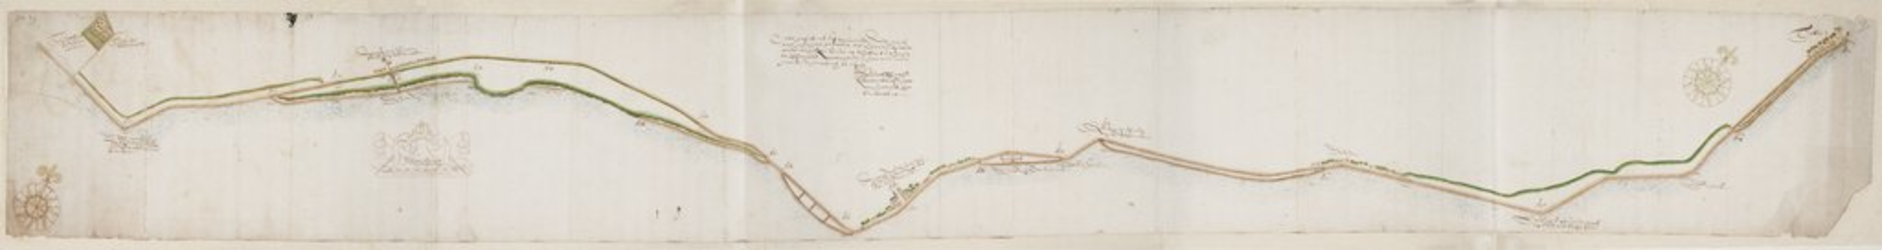 1m7 Kaart van de Westfriese zeekerende dijken... etc., 1638